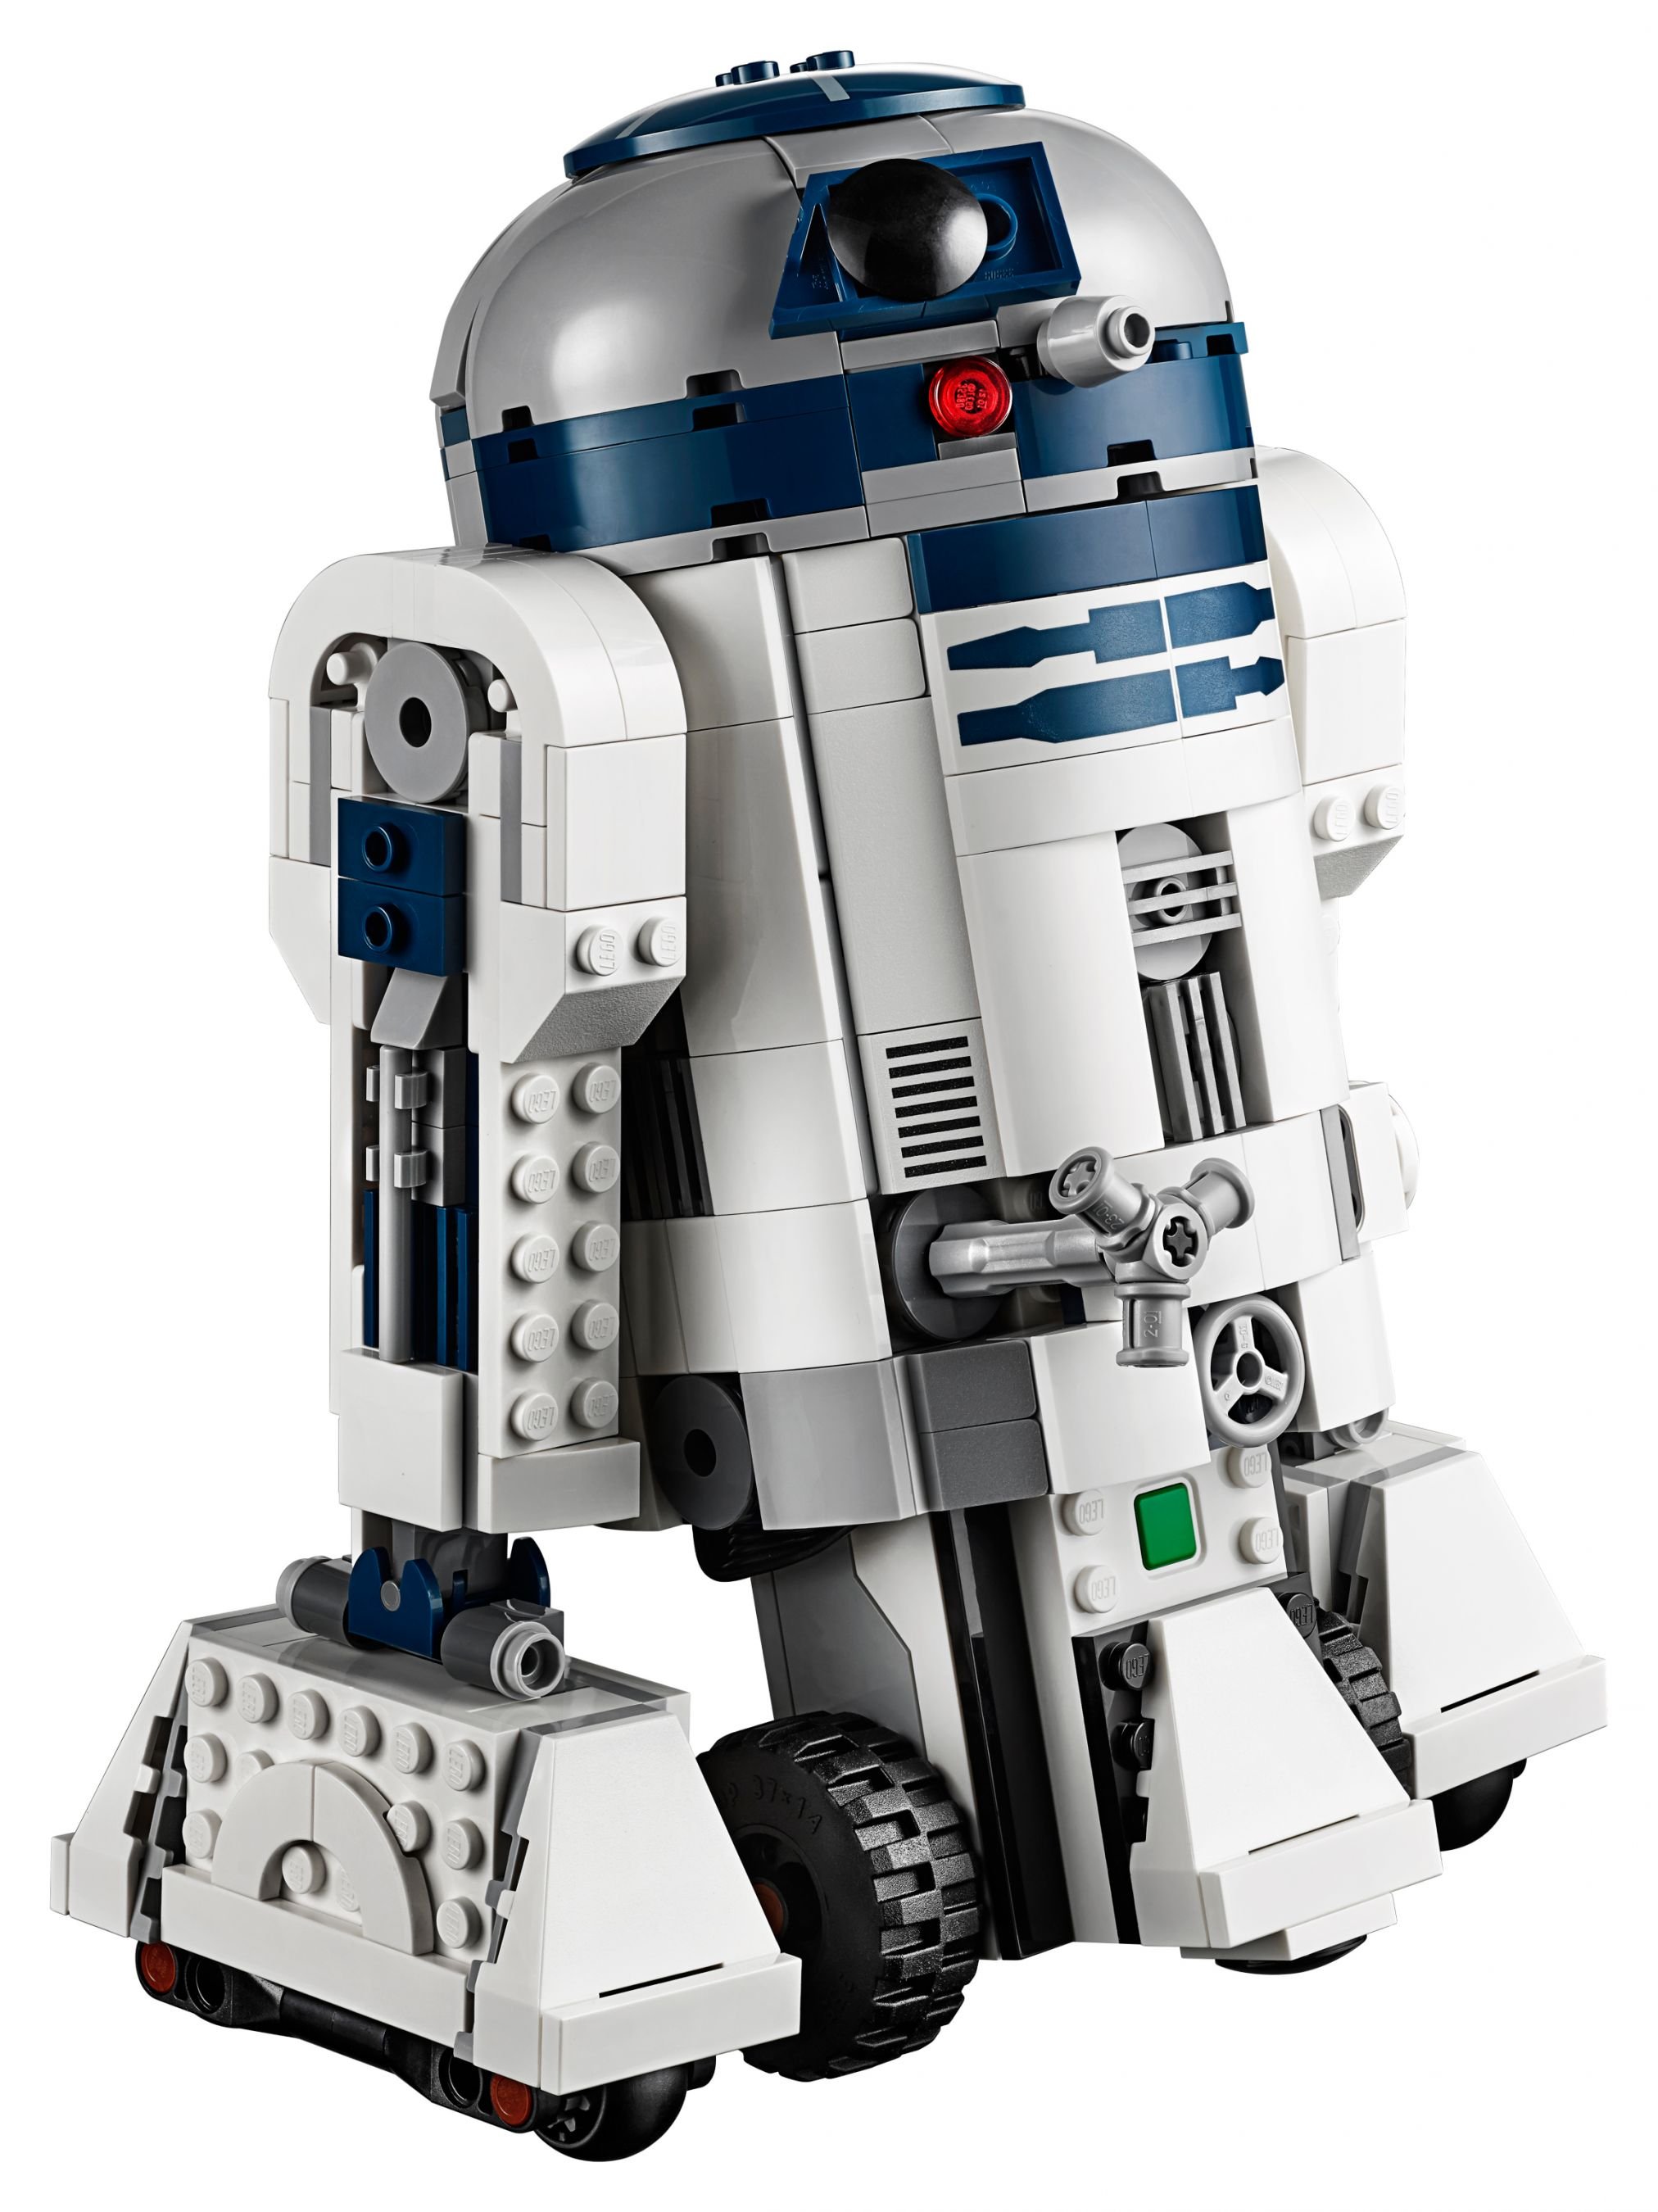 LEGO BOOST 75253 Star Wars™ BOOST Droide LEGO_75253_alt2.jpg